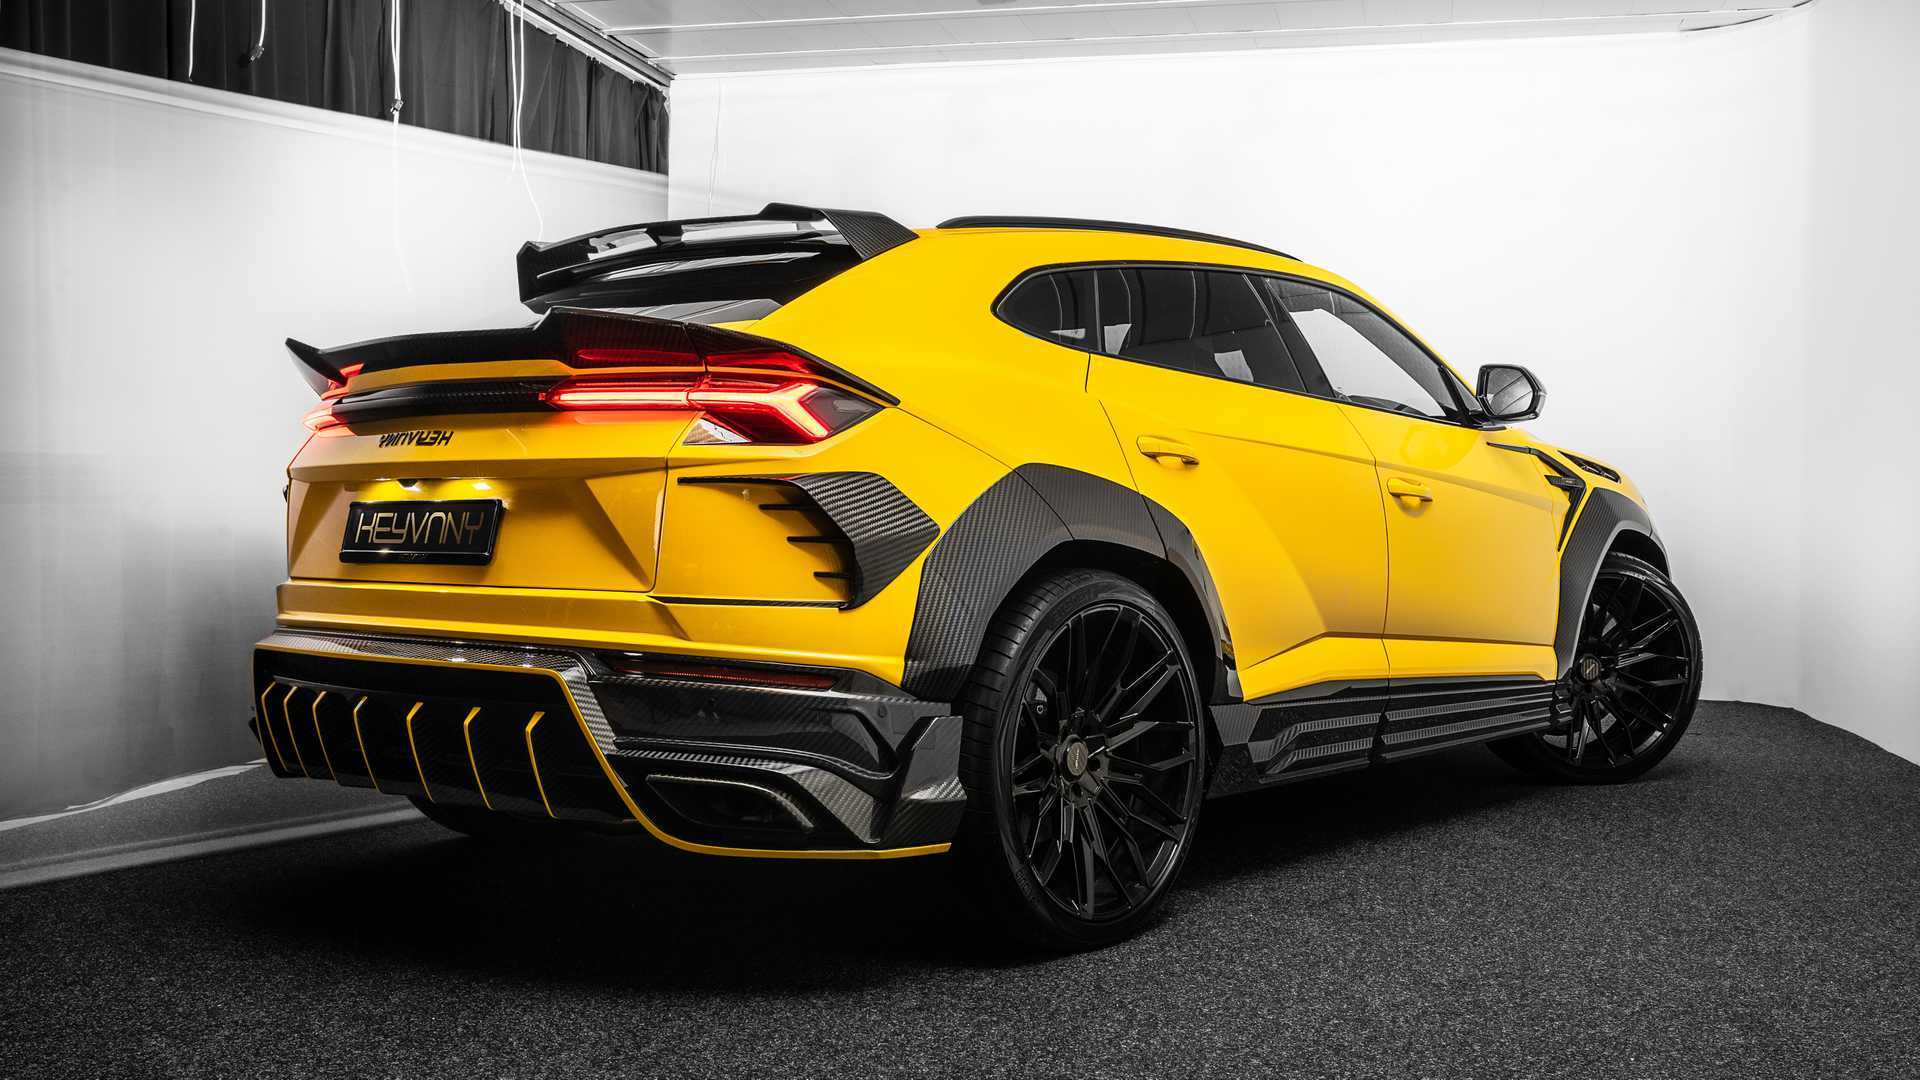 Keyvany firması Lamborghini Urus'un görünümünü sıradışı hale getirmiş